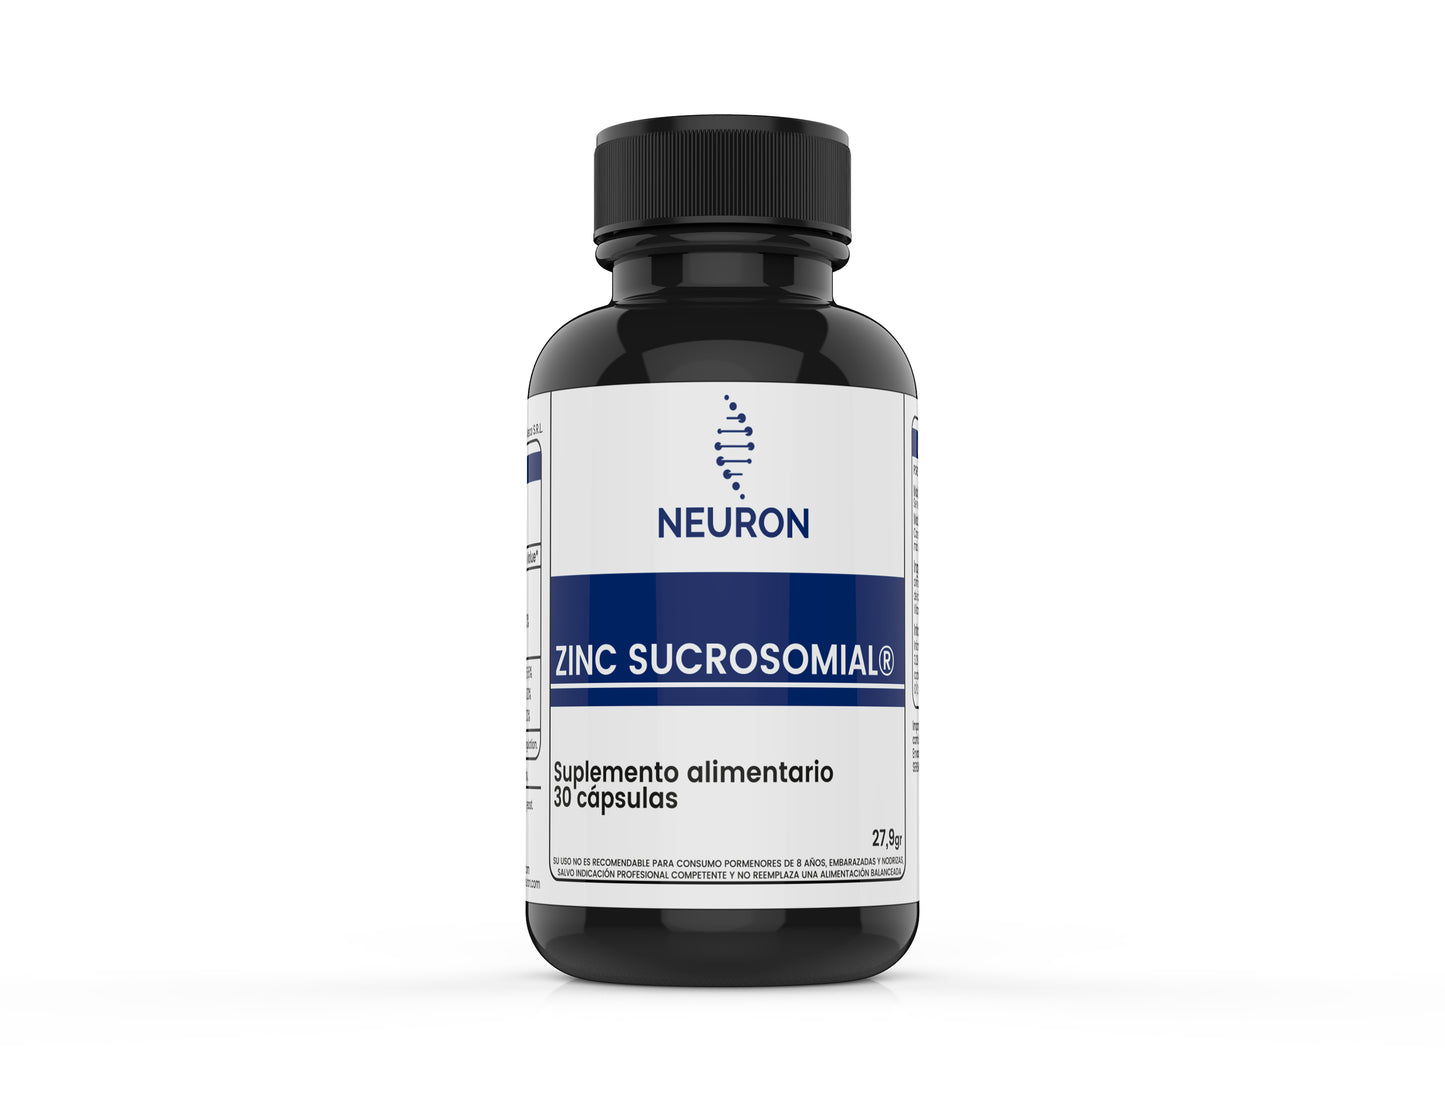 Ultrazinc 30 - Zinc sucrosomial